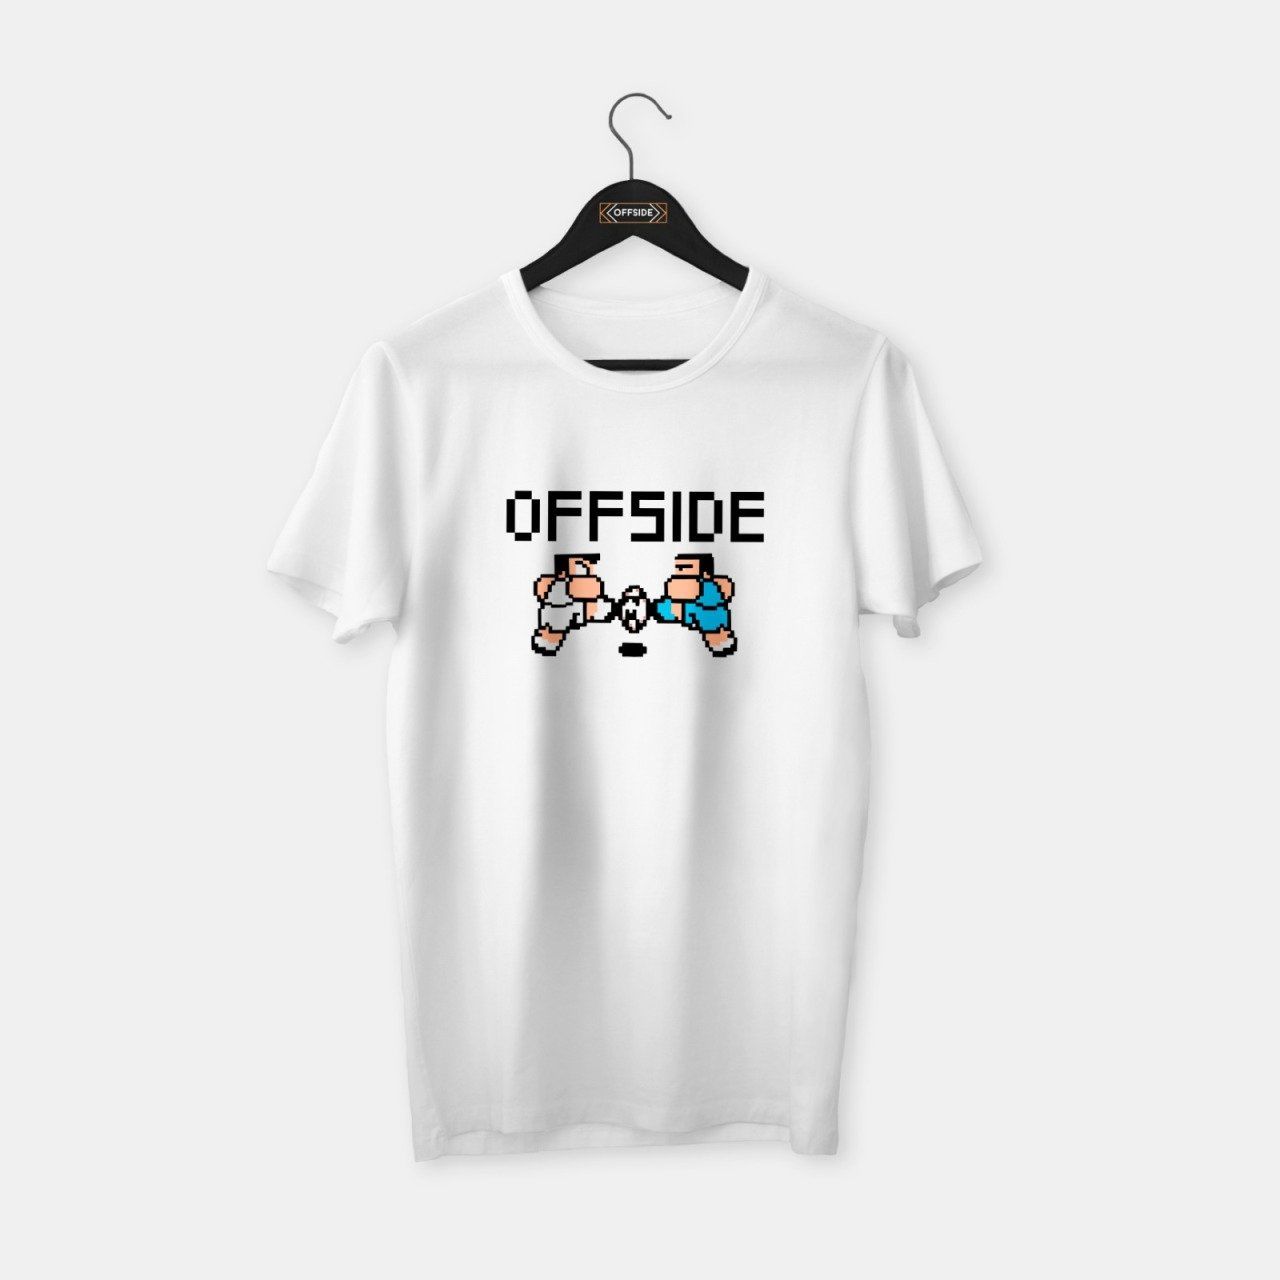 Offside 'Pixel' T-shirt